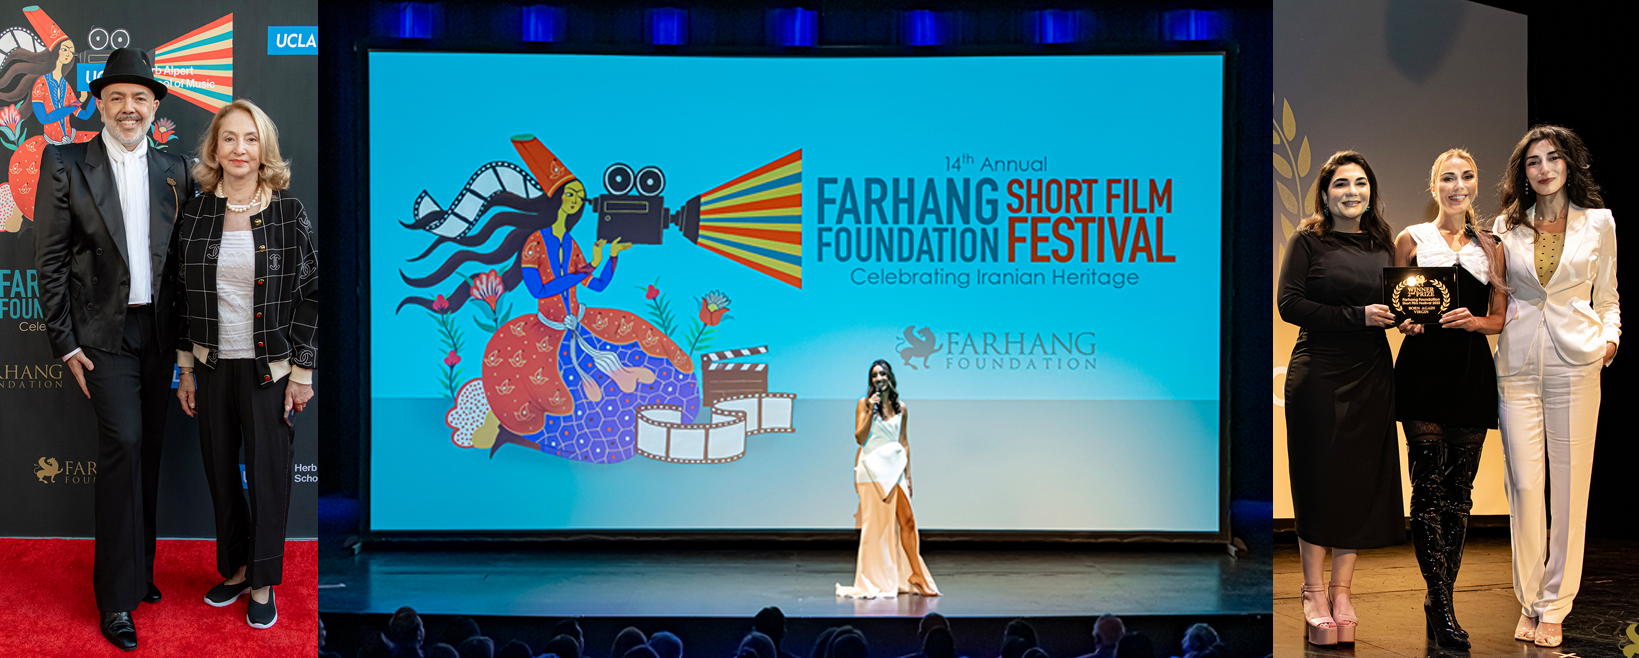 اهدای حضوری جایزه به برندگان جشنواره فیلم های کوتاه "بنیاد فرهنگ" در تالار شوئنبرگ یوسی ال ای پس از سه سال برگزاری مجازی